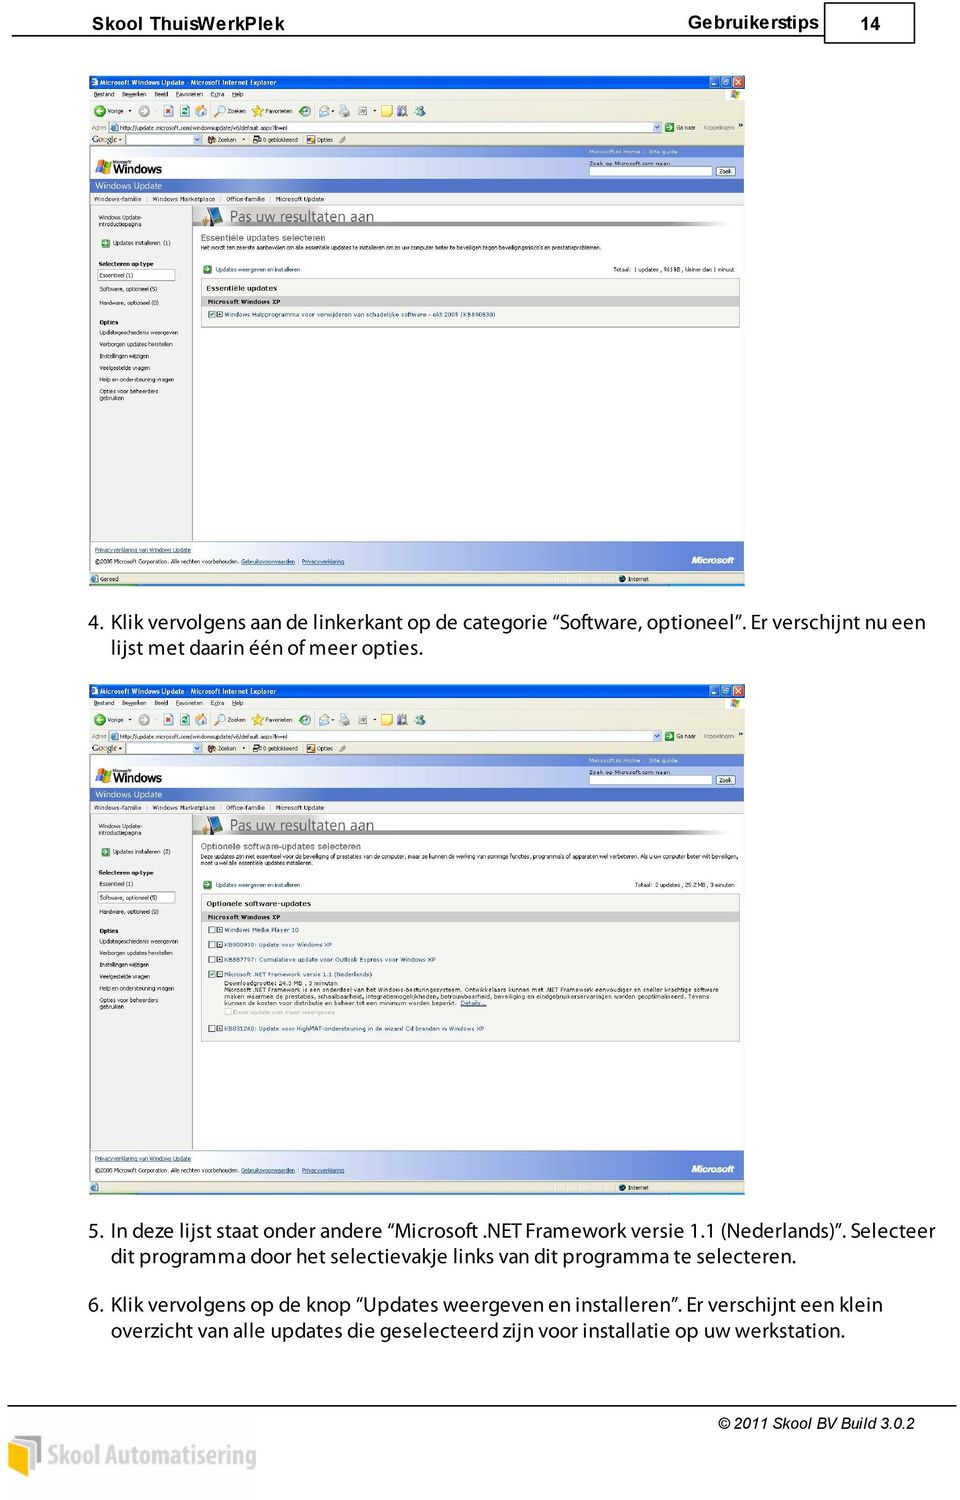 NET Framework versie 1.1 (Nederlands). Selecteer dit programma door het selectievakje links van dit programma te selecteren.